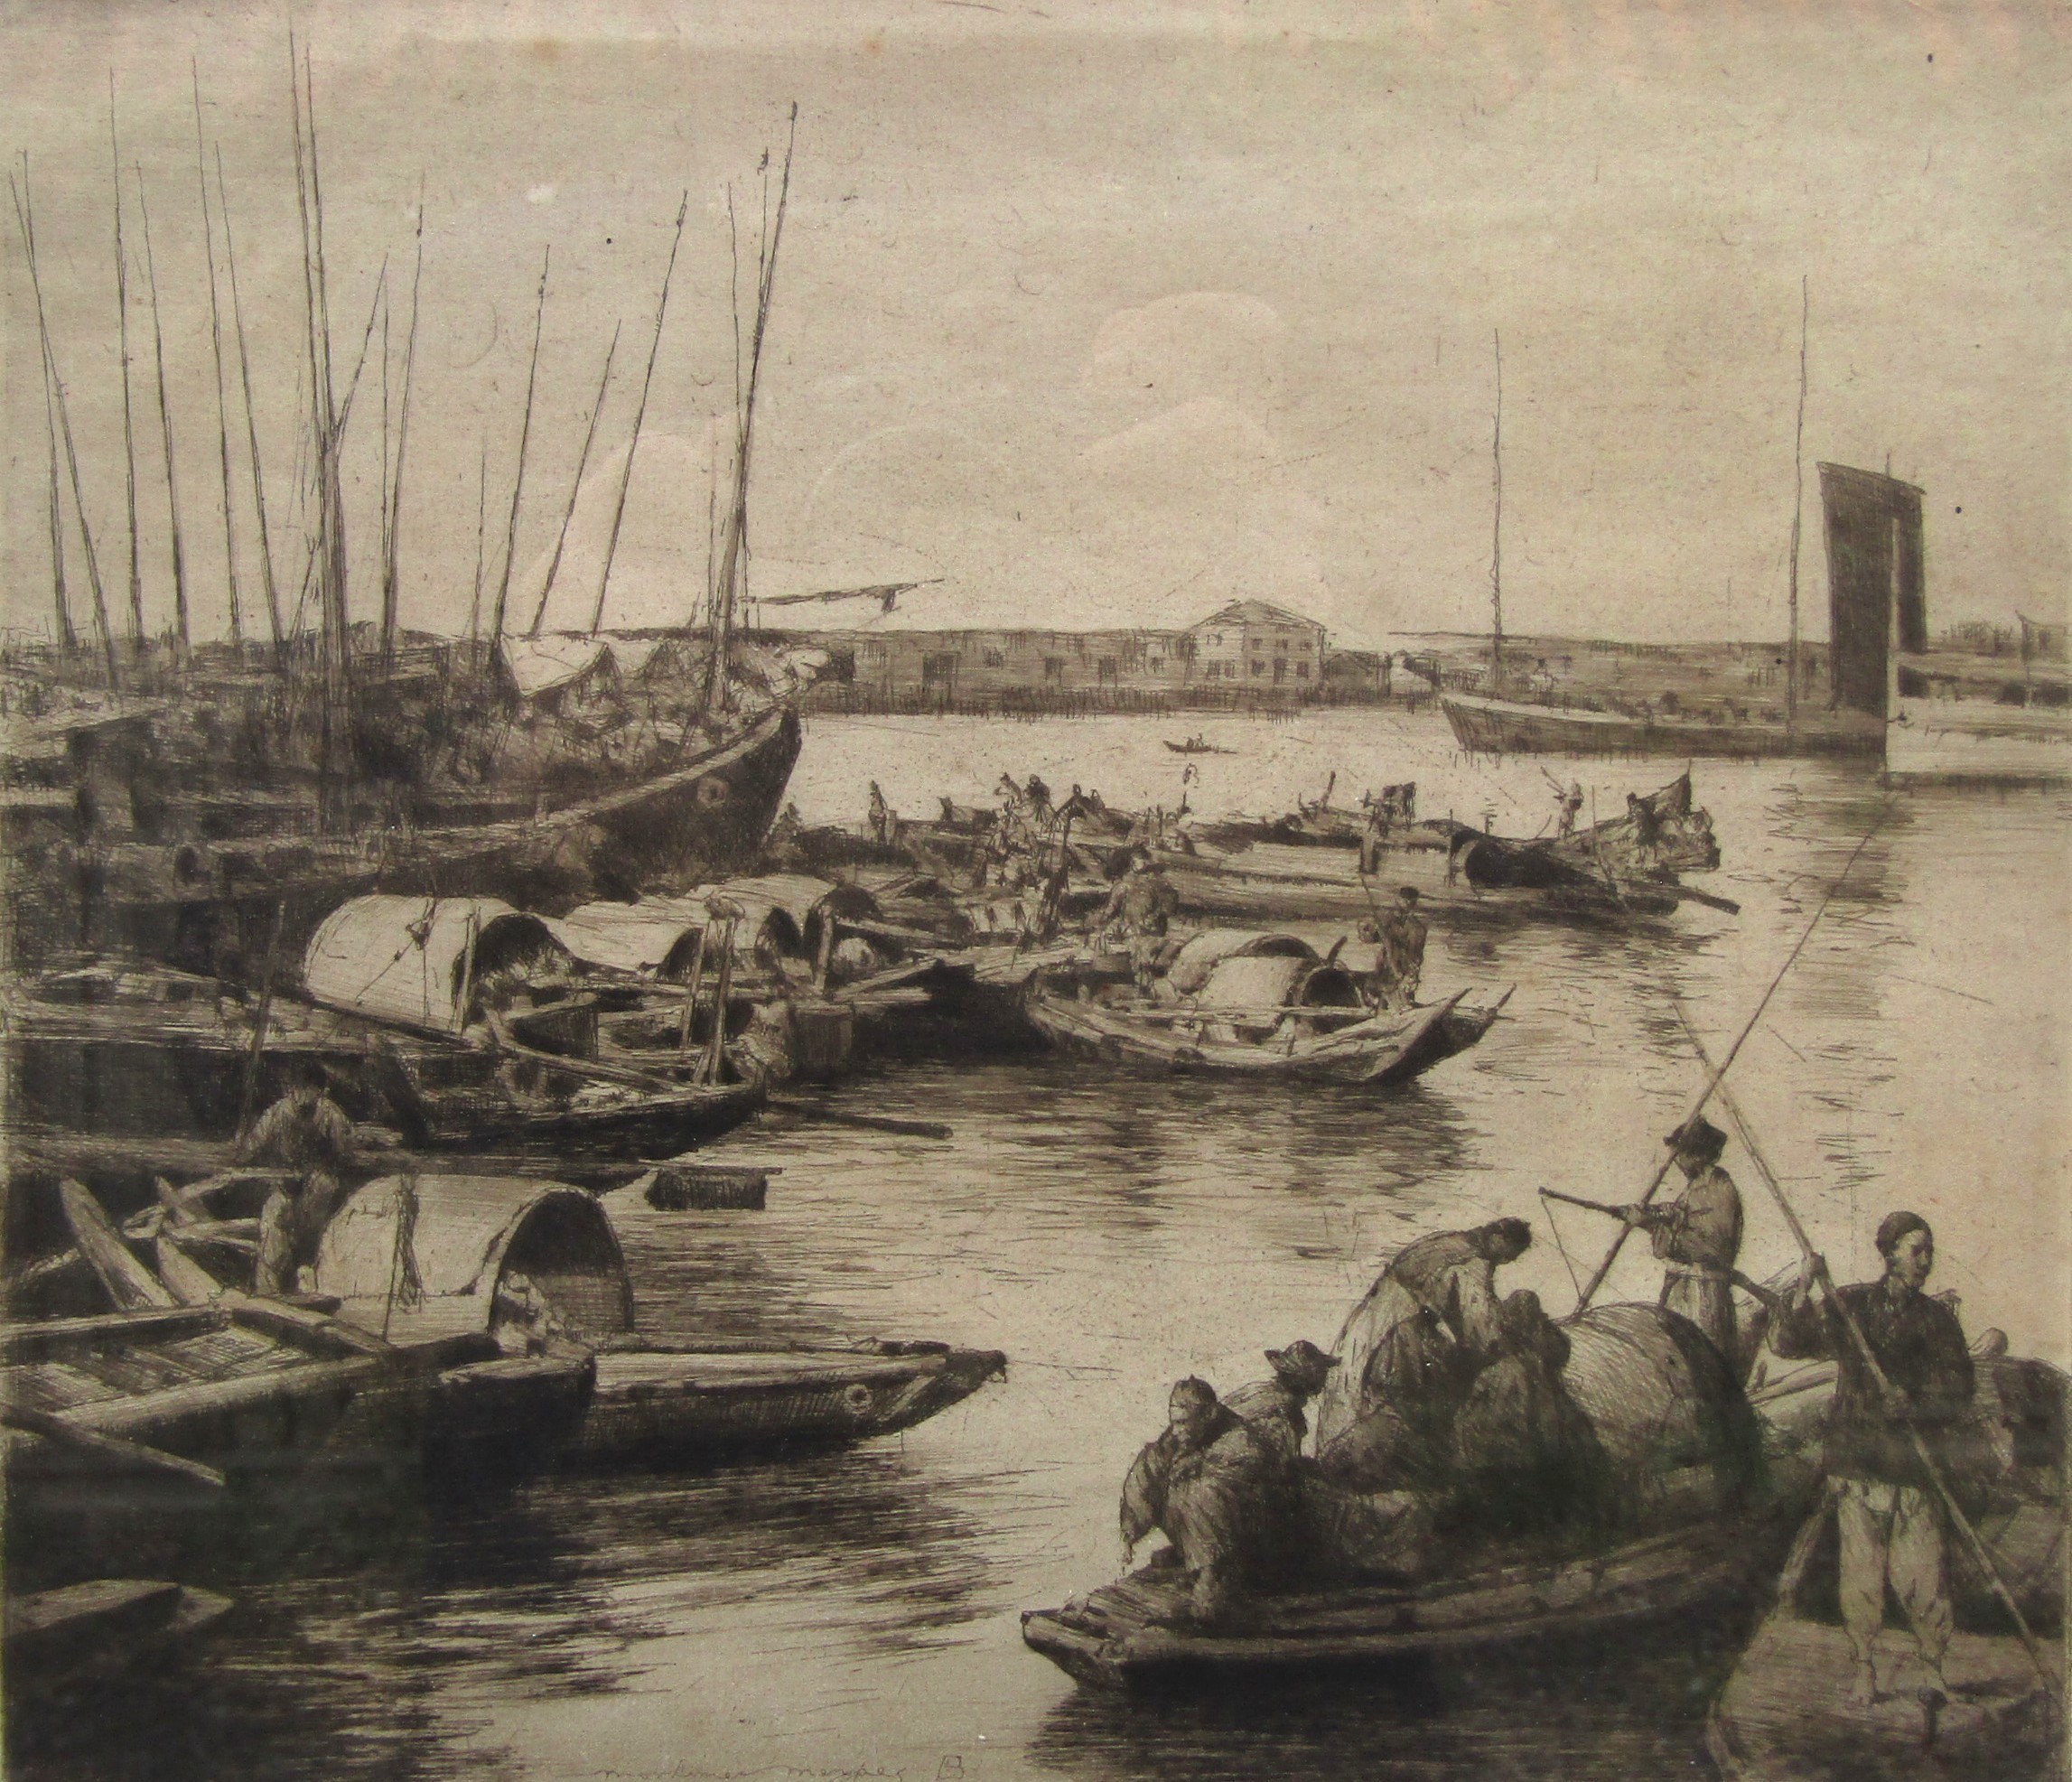 MORTIMER LUDDINGTON MENPES (Australian 1855-1938) 'On The Yellow River, Shanghai' - drypoint - Image 2 of 7